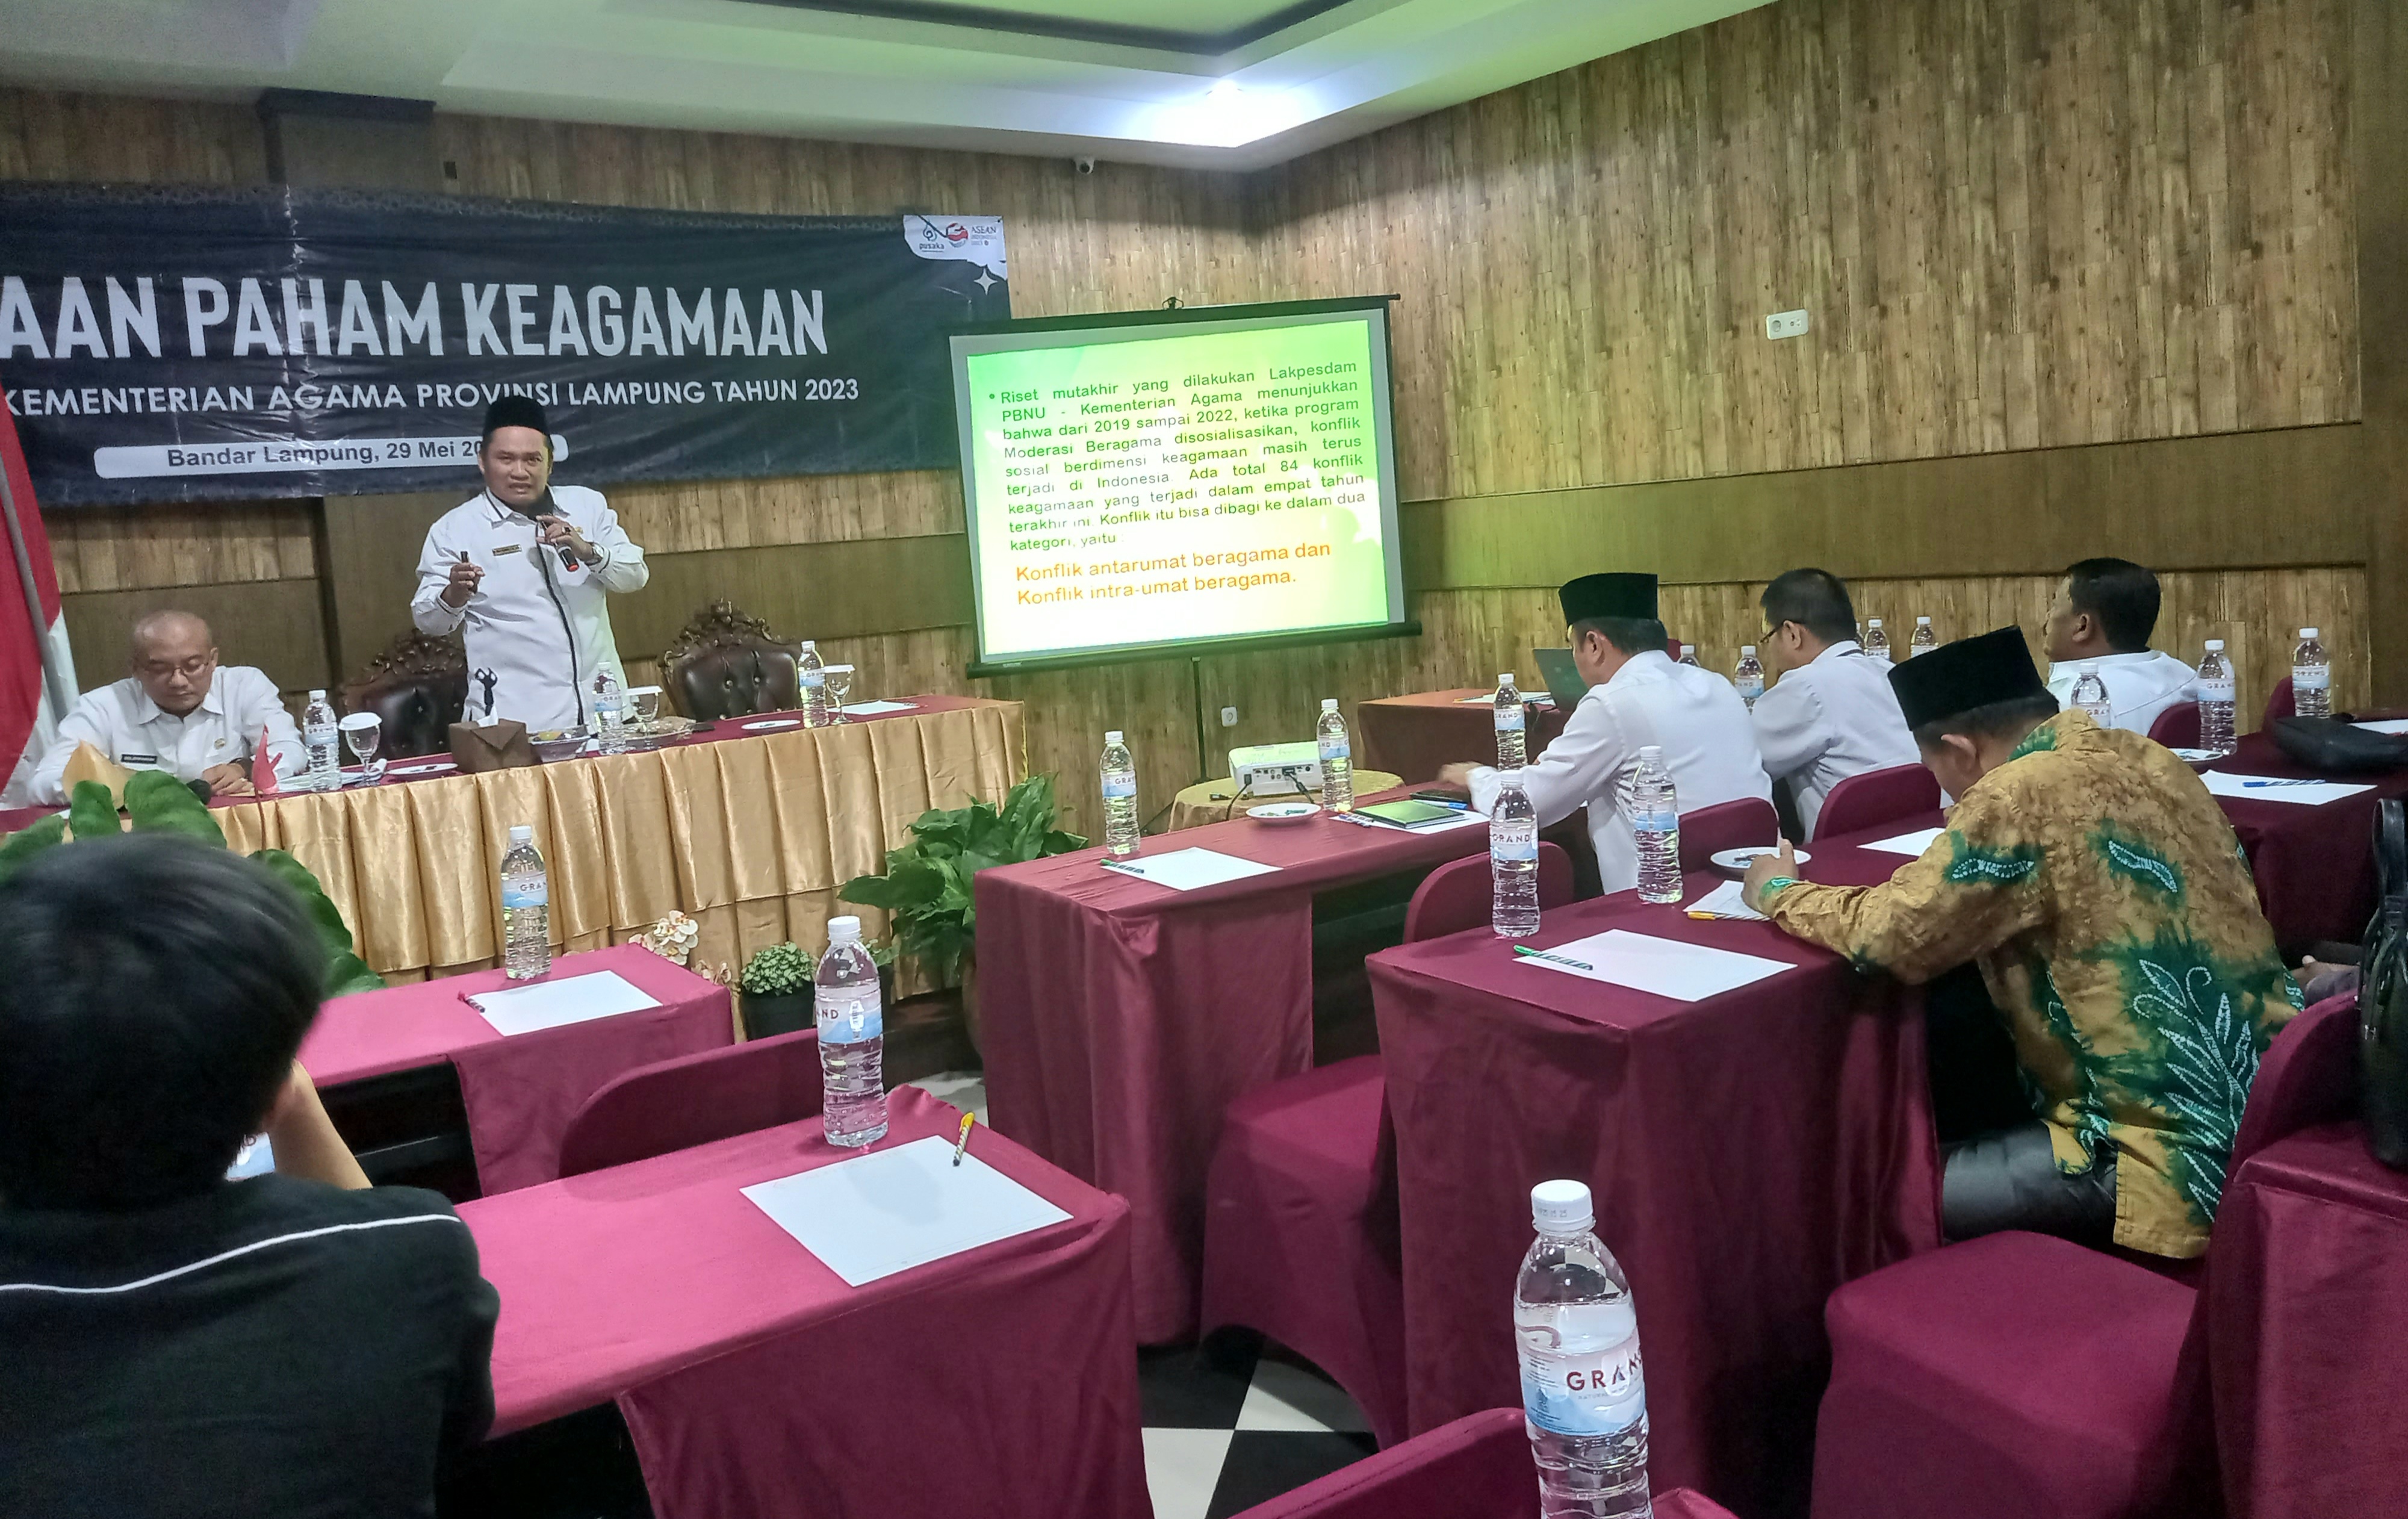 Kemenag Lampung: Moderasi Solusi Tangkal Konflik Beragama